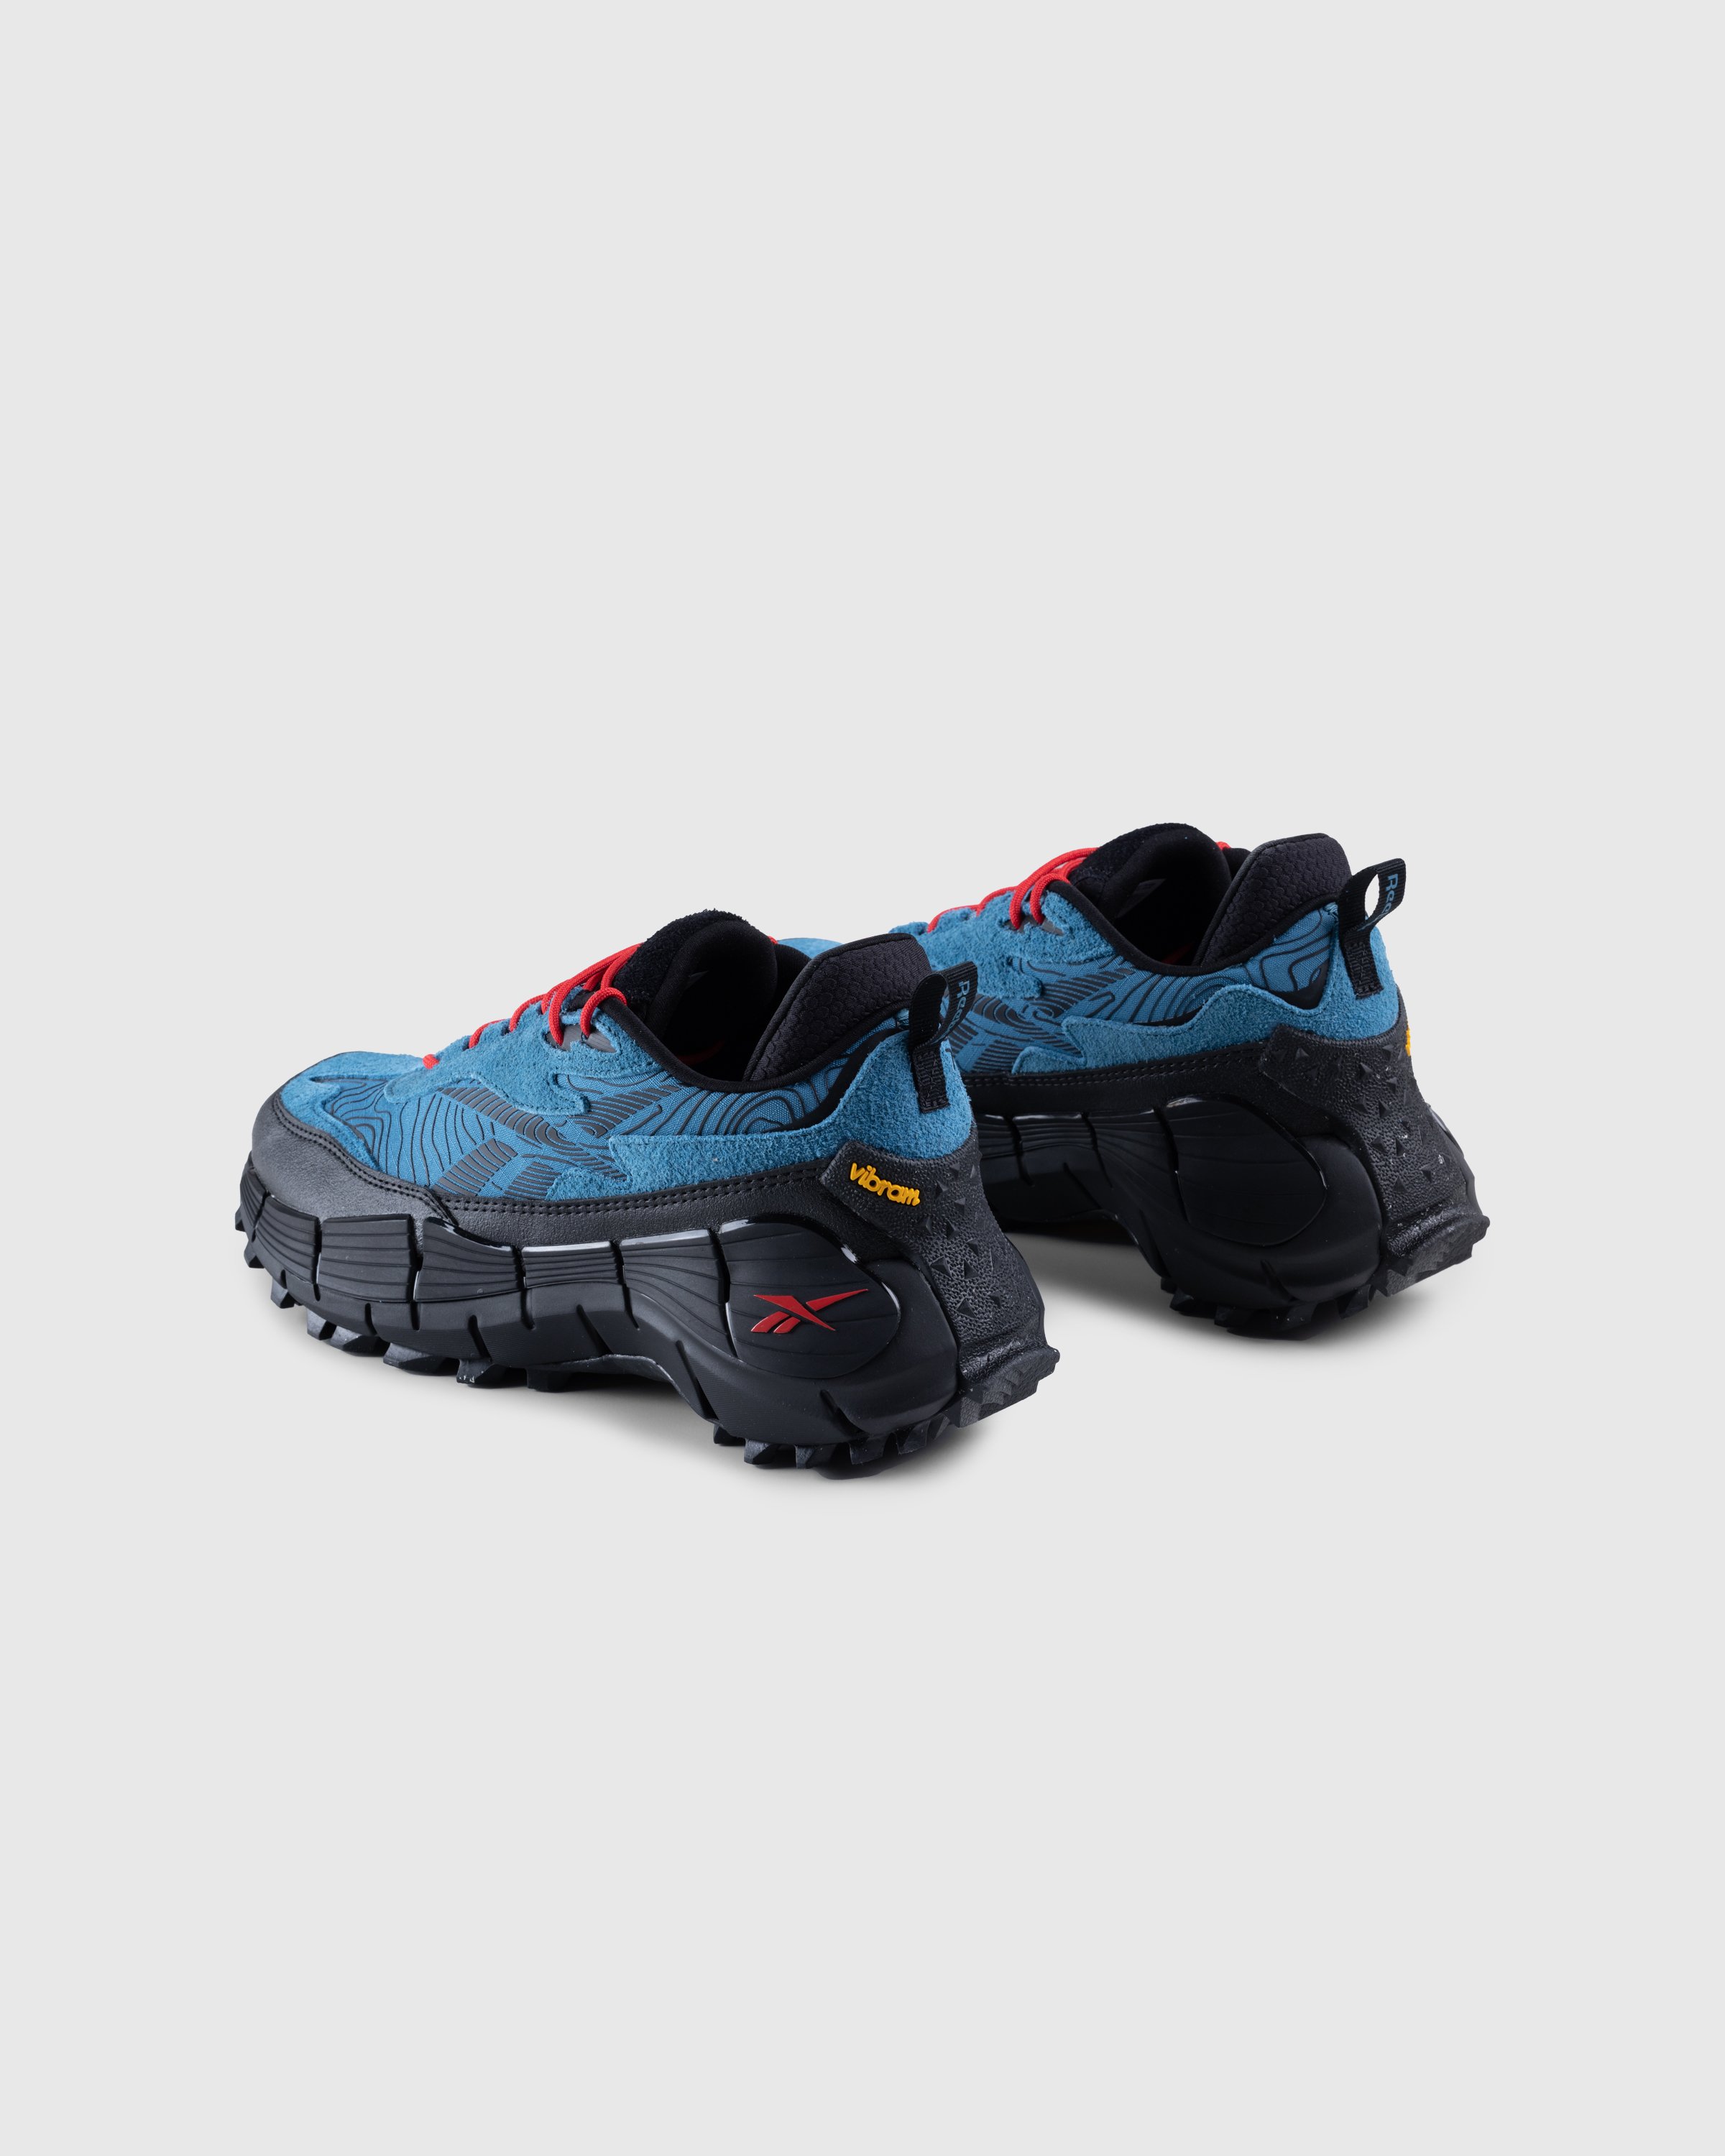 Reebok - Zig Kinetica 2.5 Edge Blue - Footwear - Blue - Image 4